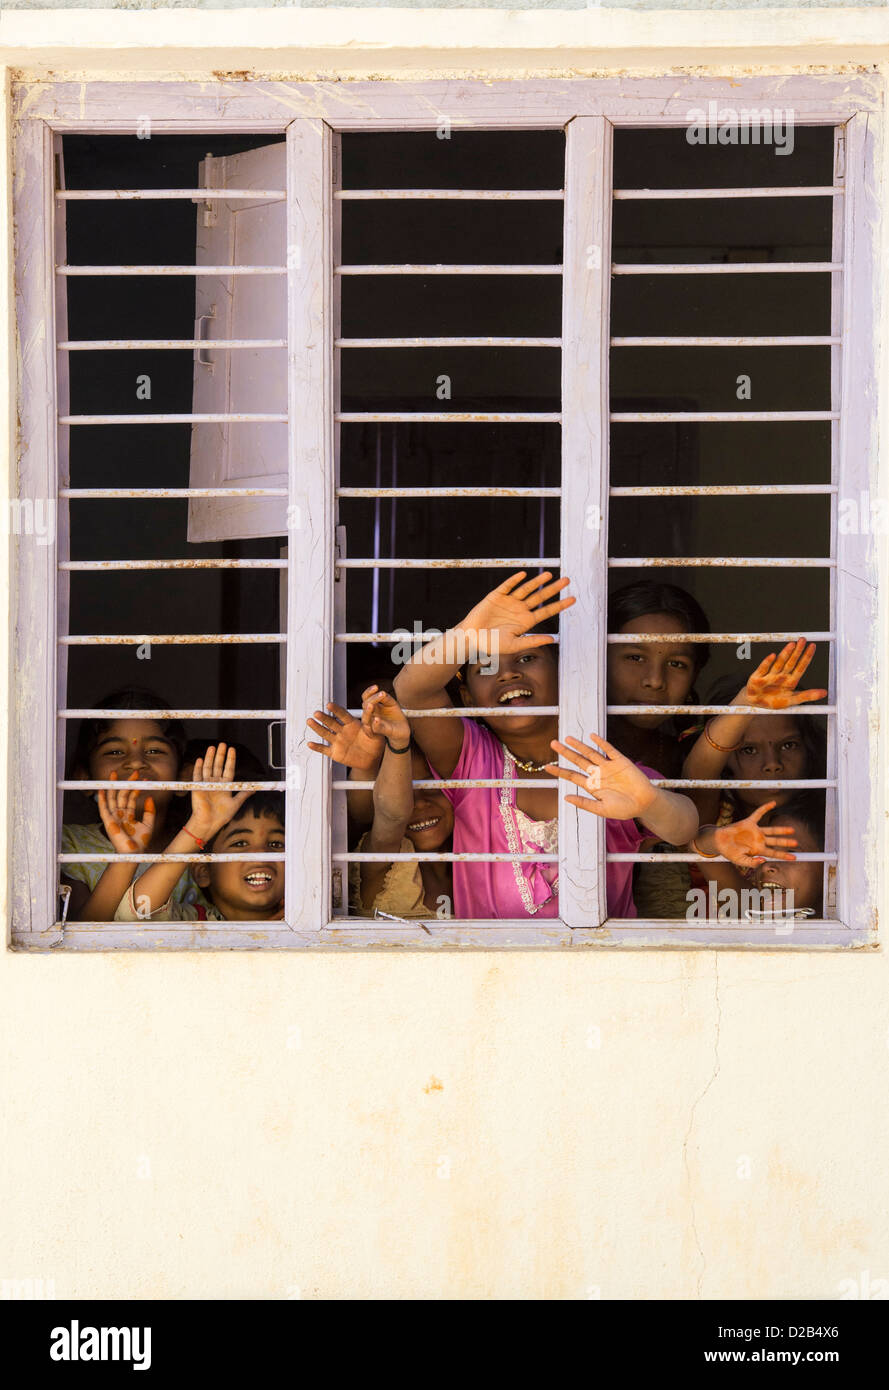 Les jeunes enfants du village indien à la fenêtre à travers les barreaux d'une maison indienne. L'Andhra Pradesh, Inde Banque D'Images